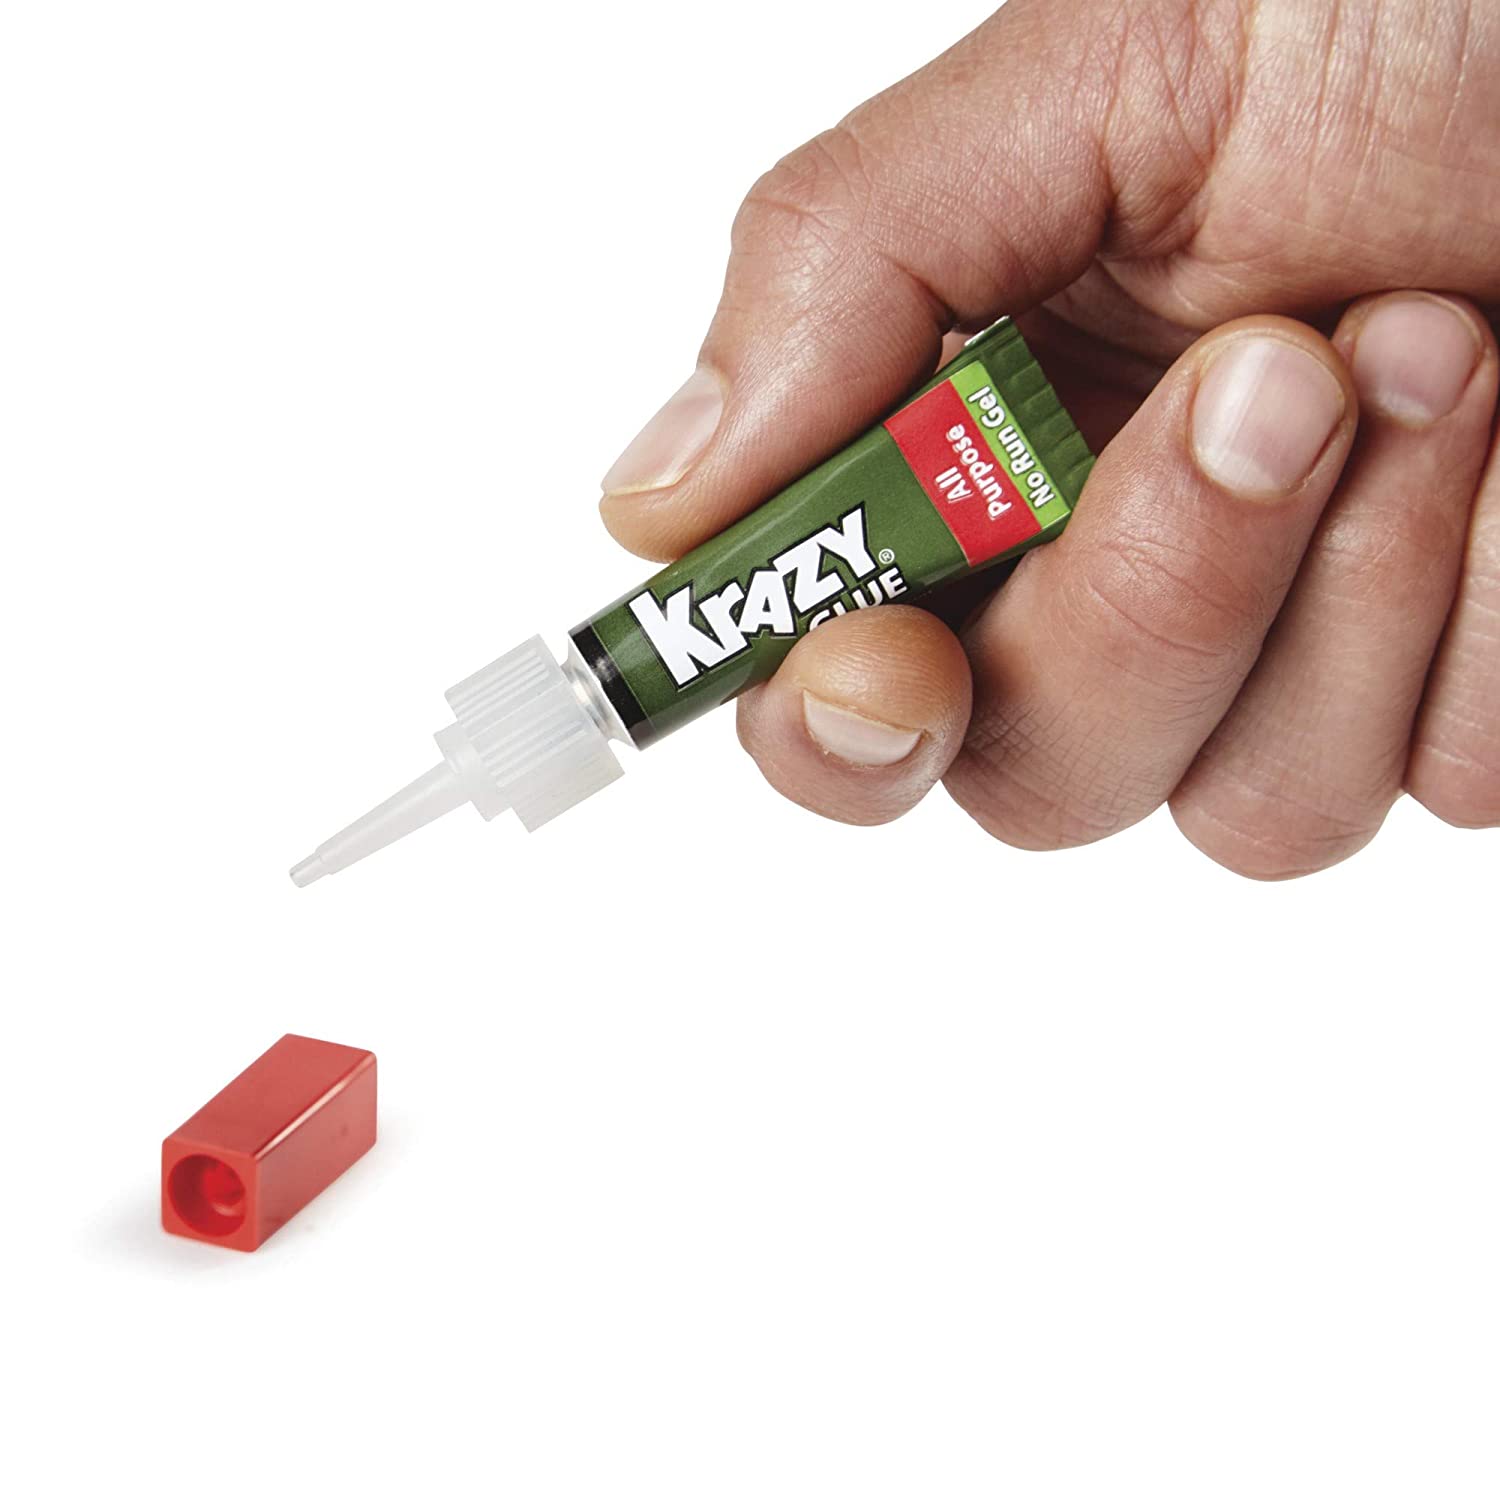 Krazy Glue All Purpose Precision Tip Glue, 0.07 oz